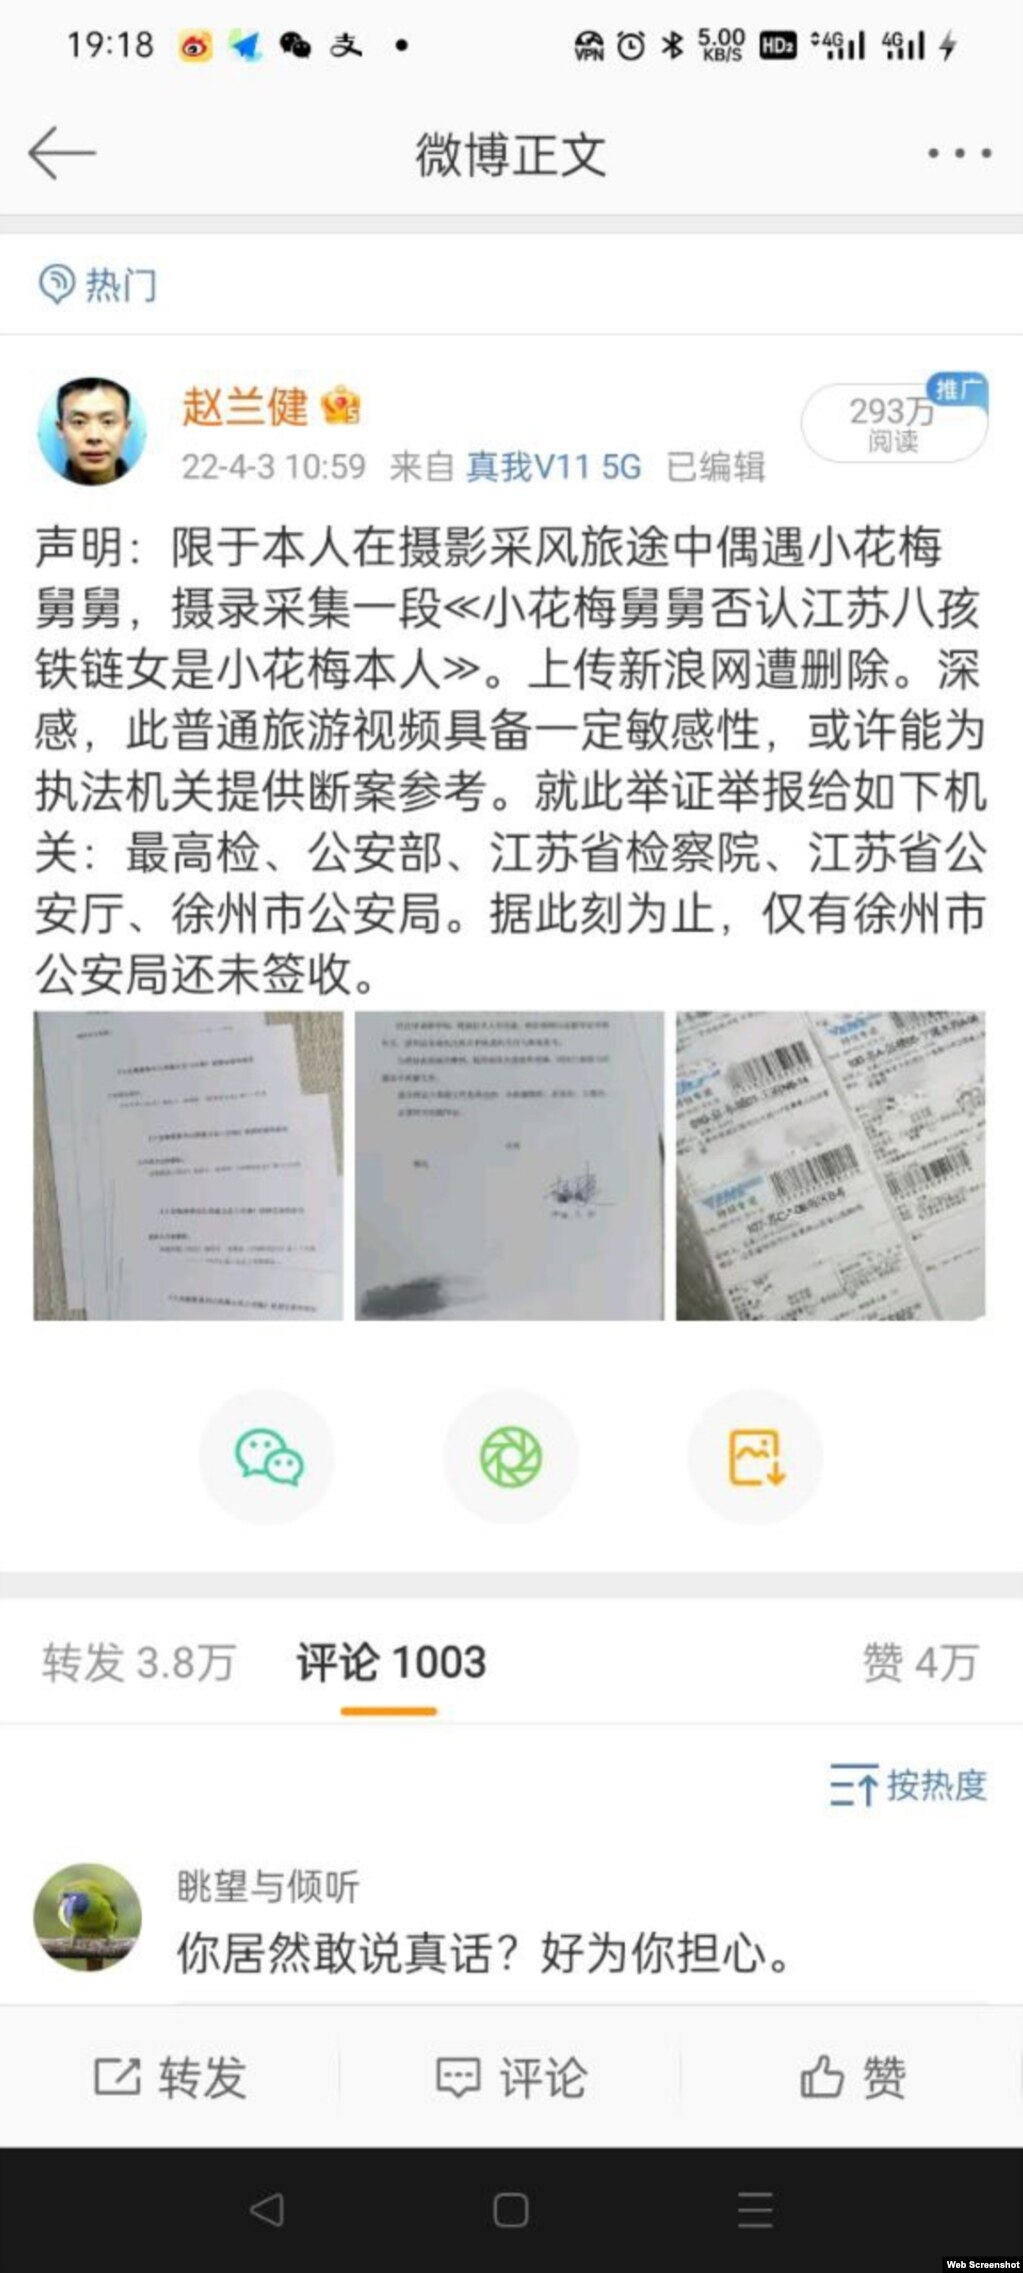 赵兰健发布向国家和地方检察和公安部门寄送举报视频材料的消息，获得大量观看阅读。（微博截图）(photo:VOA)